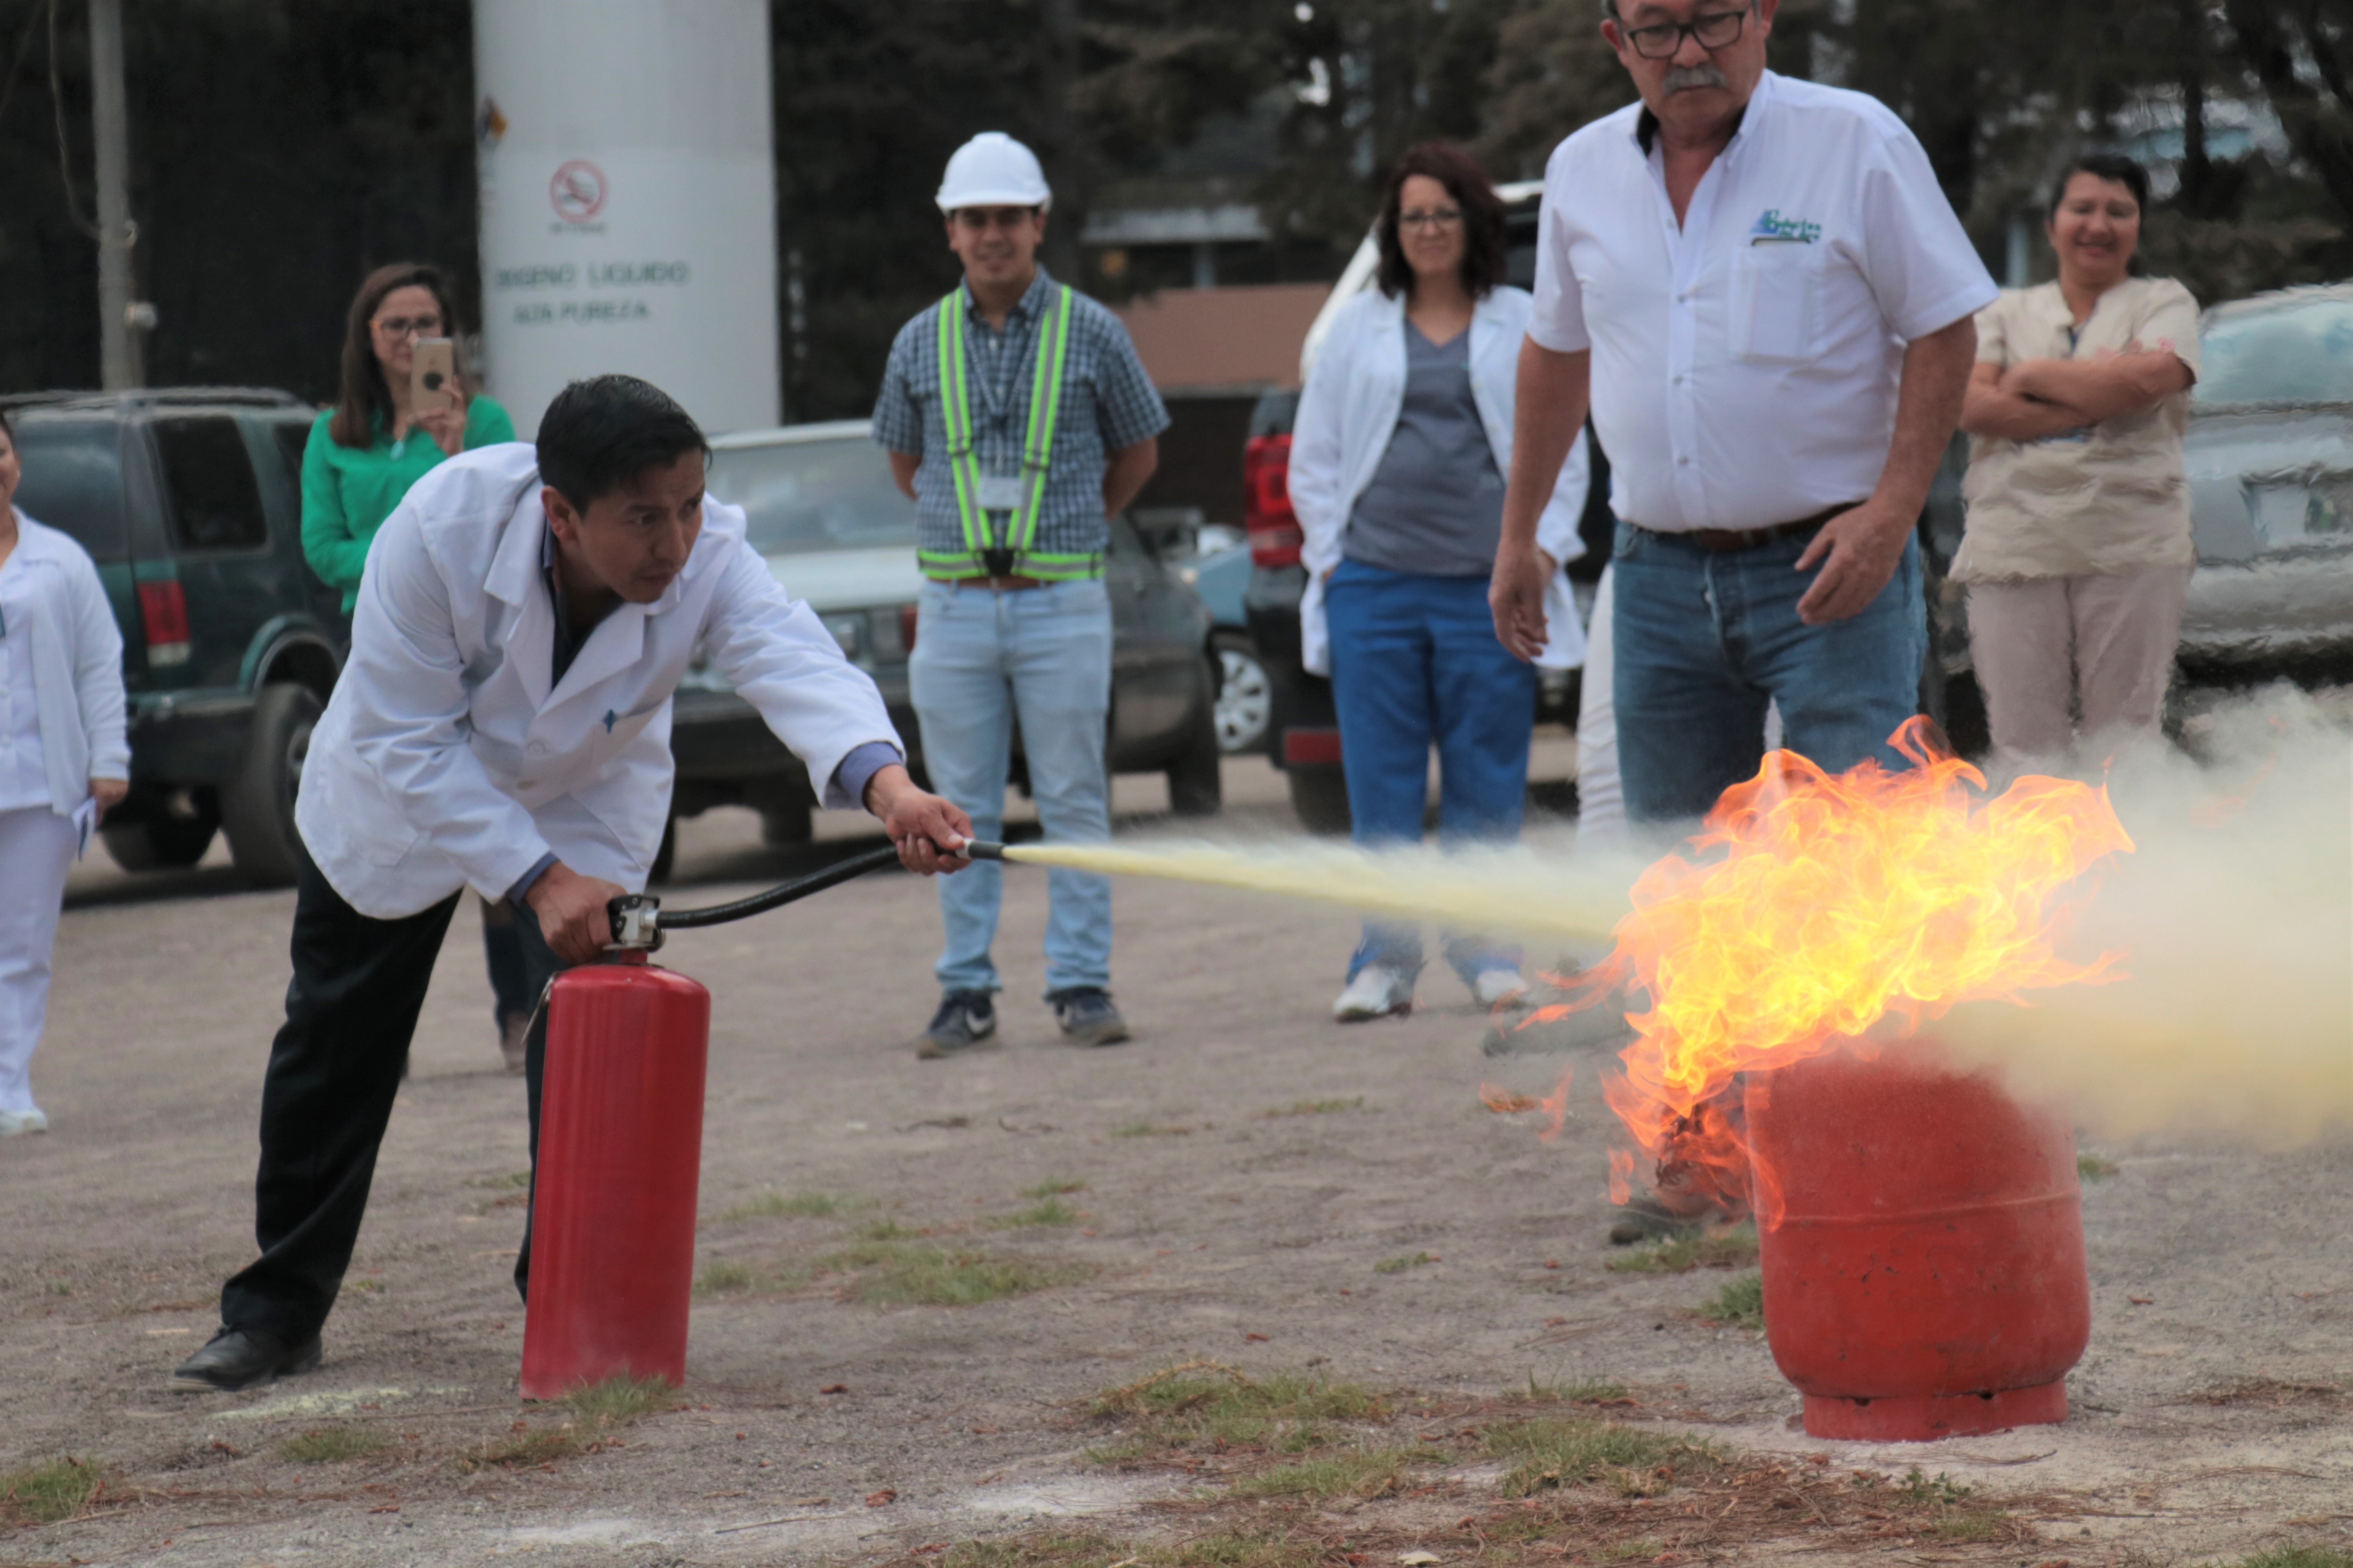 Los trabajores del HRO hicieron práctica con un cilindro de gas propano en llamas para mejorar el manejo de extintores. (Foto Prensa Libre: Raúl Juárez)